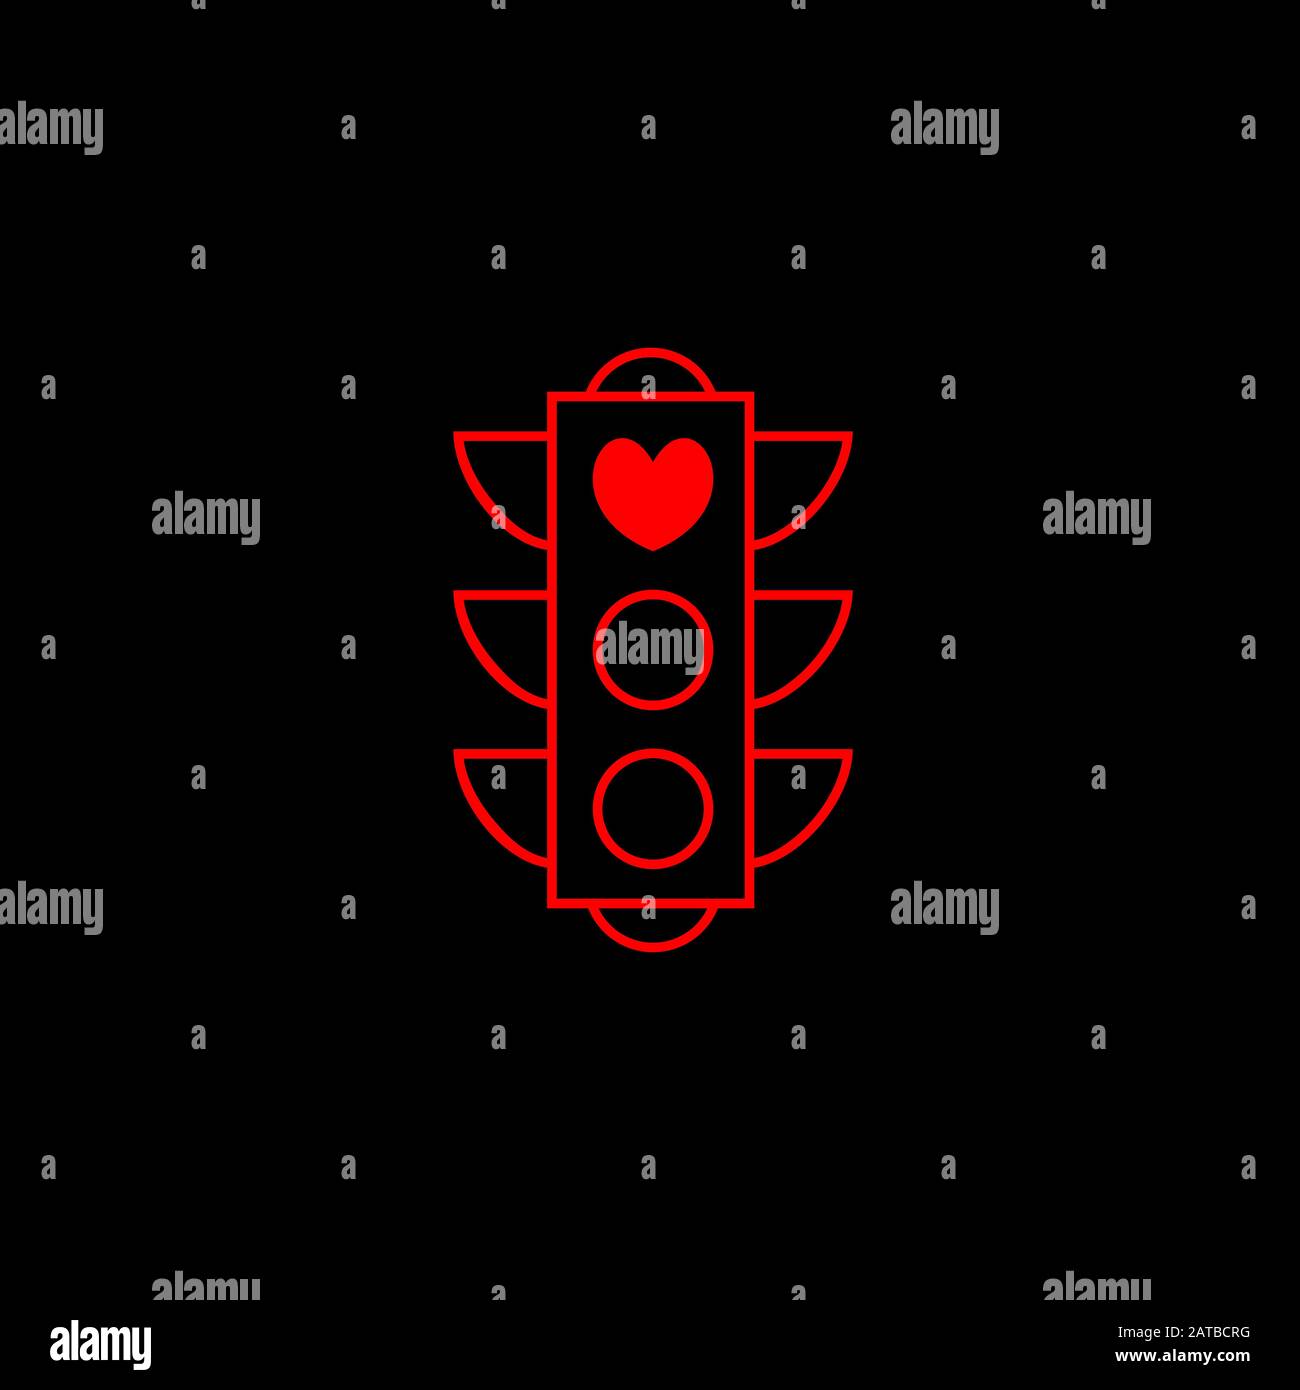 Love Light - modello creativo vettoriale. Icona del cuore come simbolo dell'amore. Stop Love Red Road Sign. Semaforo su sfondo nero per San Valentino. Illustrazione Vettoriale